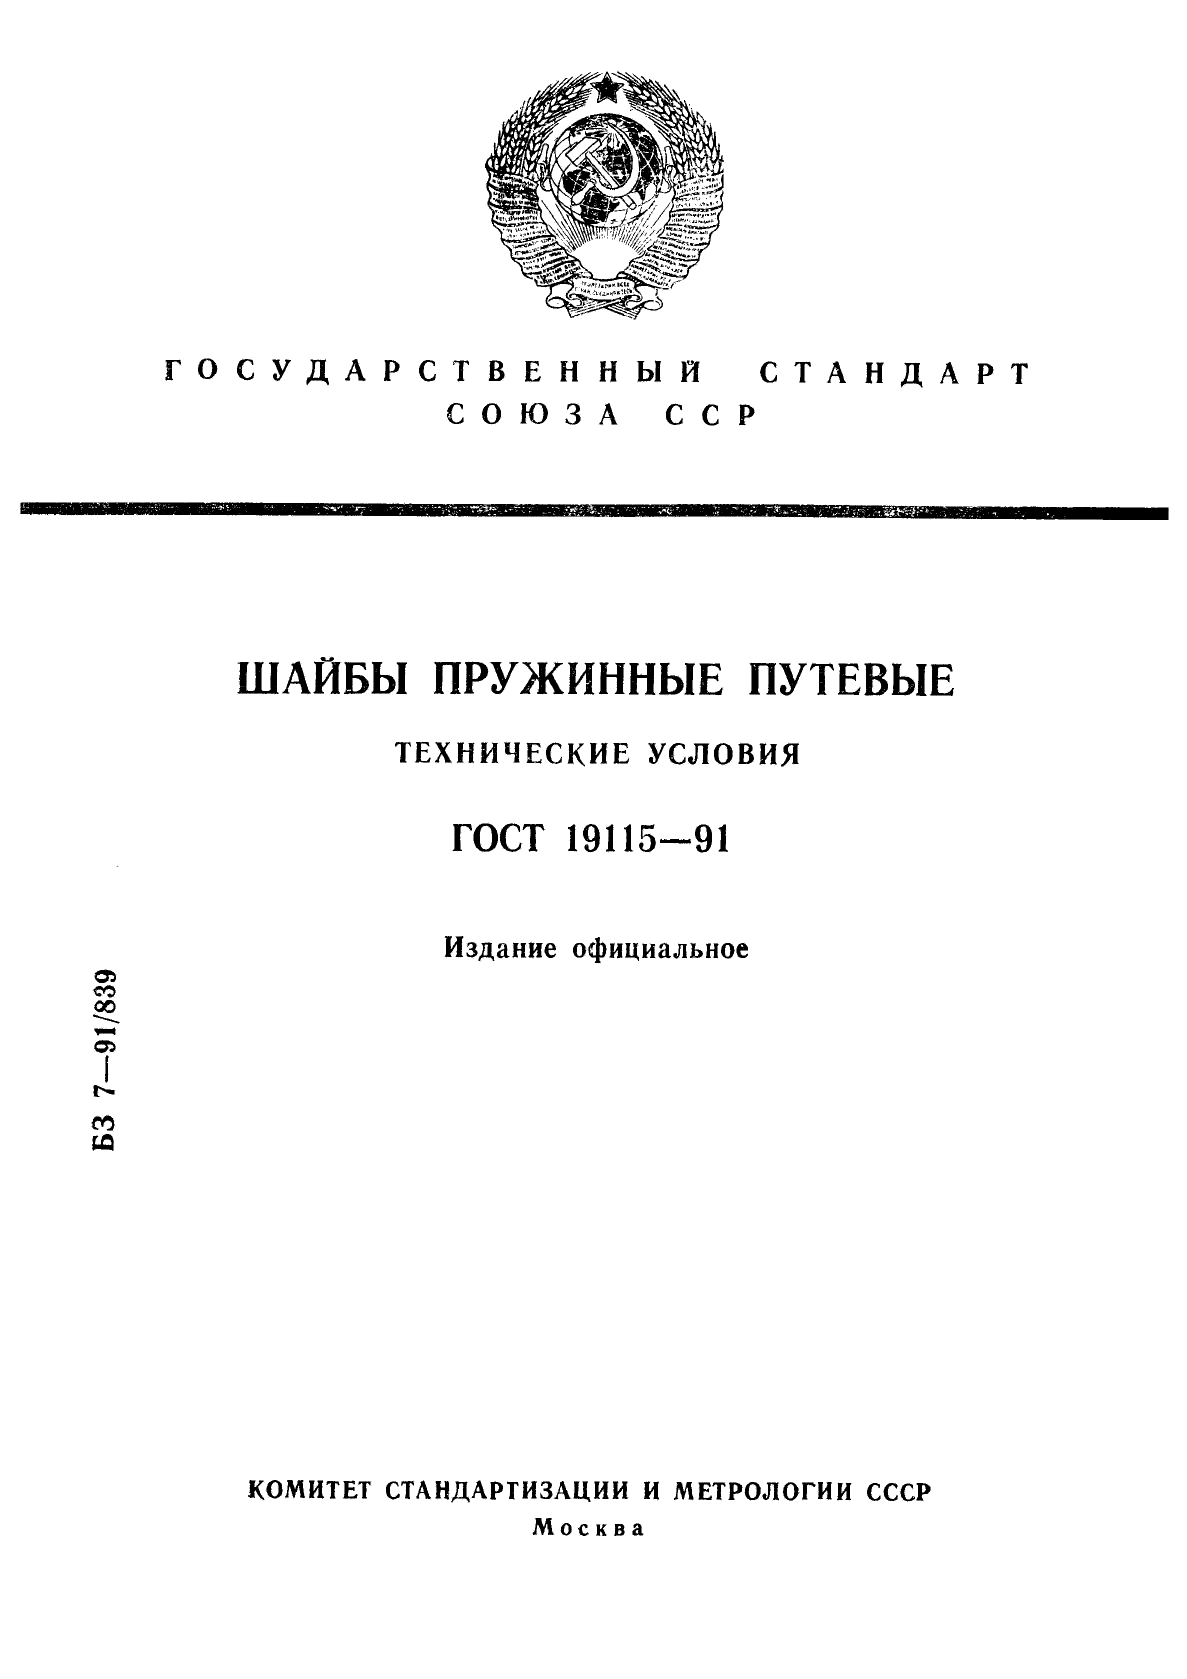  19115-91.   .  .  1